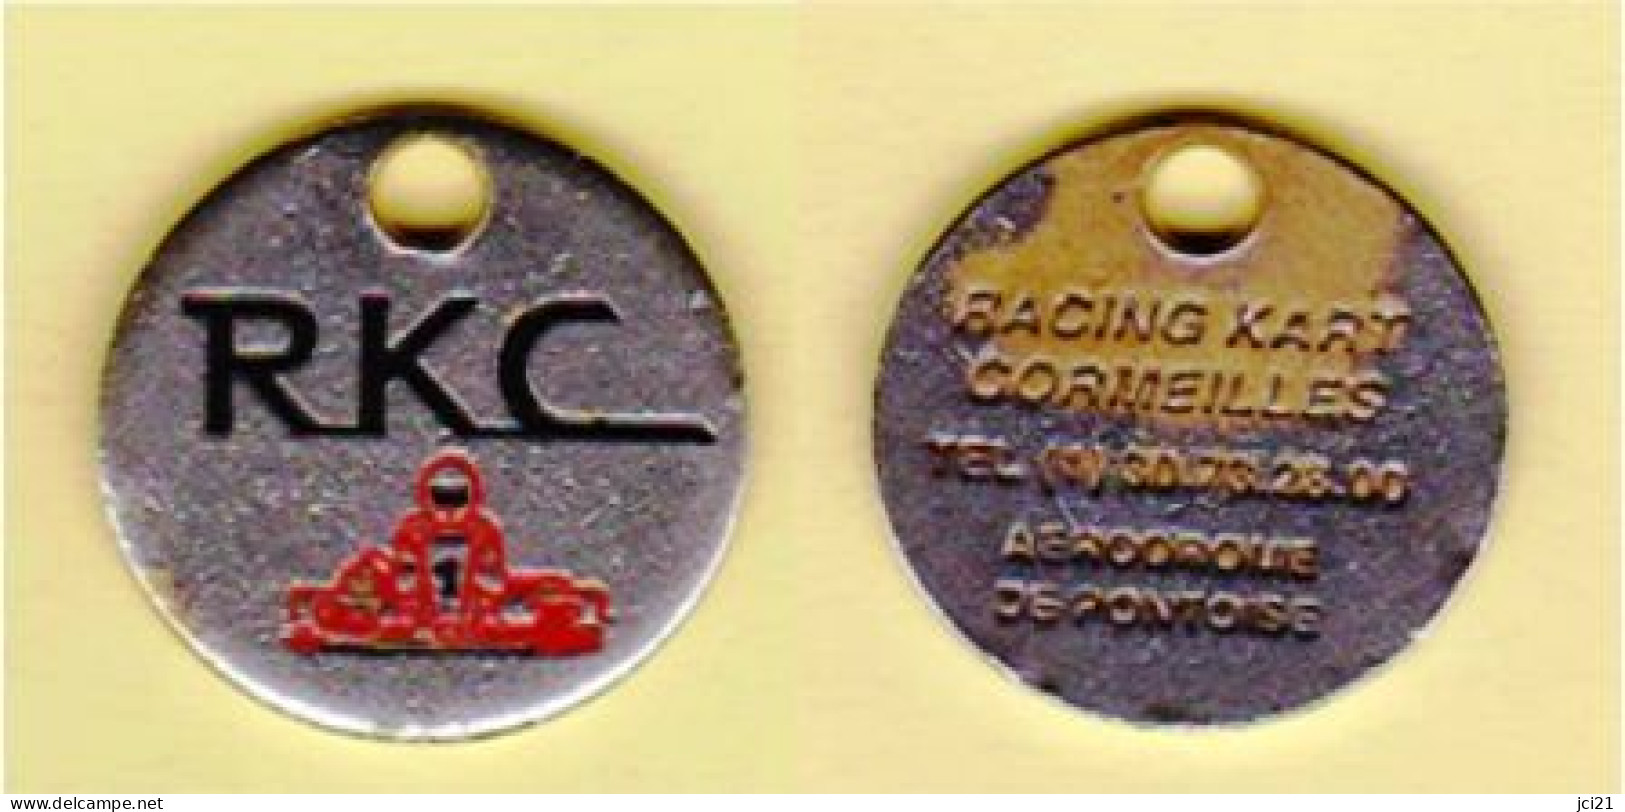 Jeton De Caddie " RKC - RACING KART CORMEILLES - Aérodrome De Pontoise" Karting [G]_Je045 - Moneda Carro